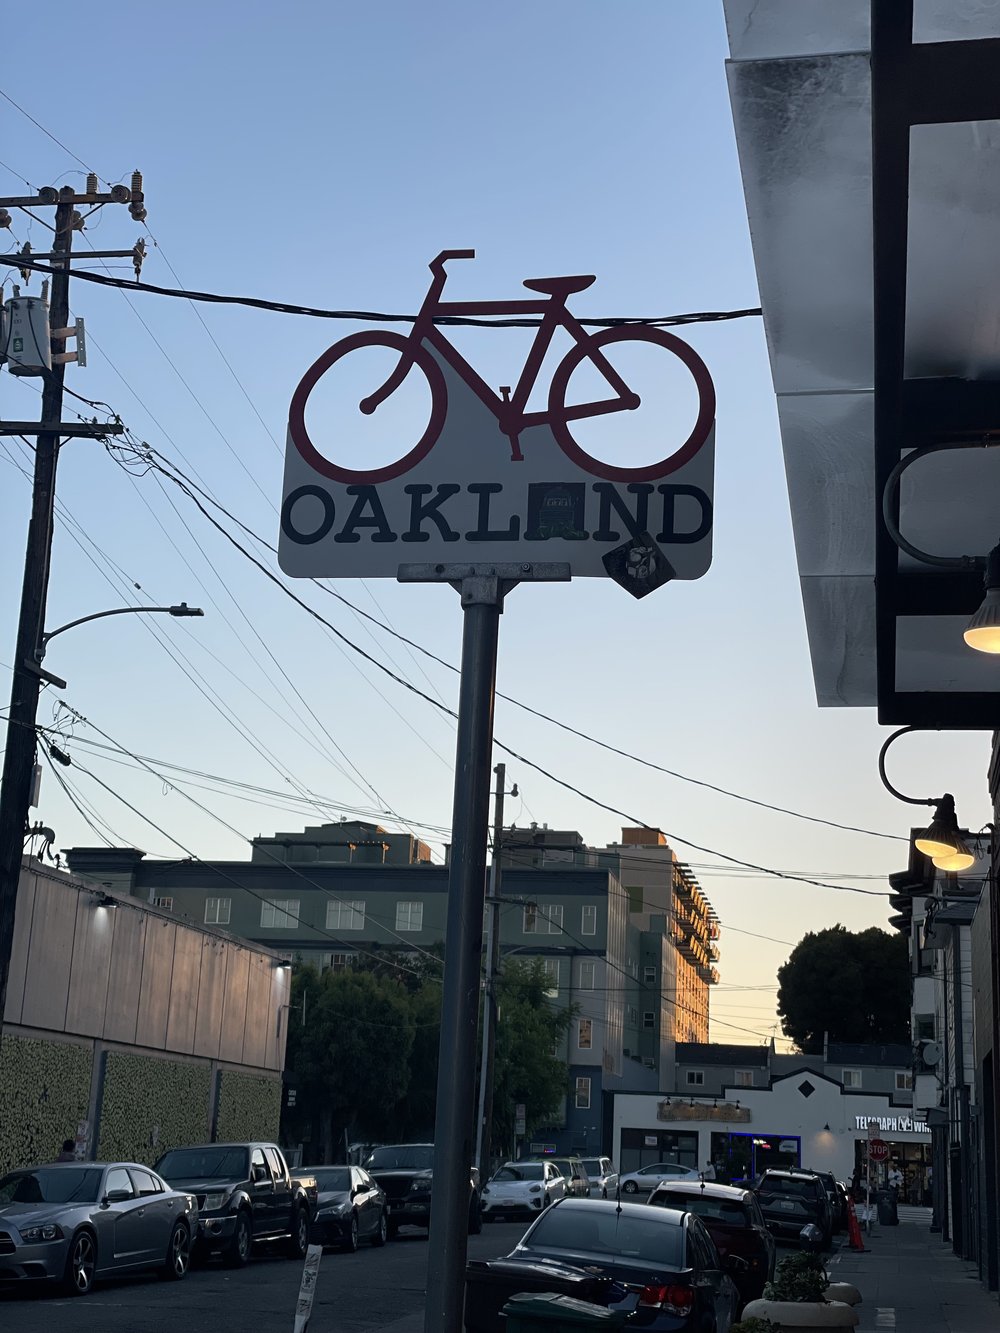 Oakland.jpg